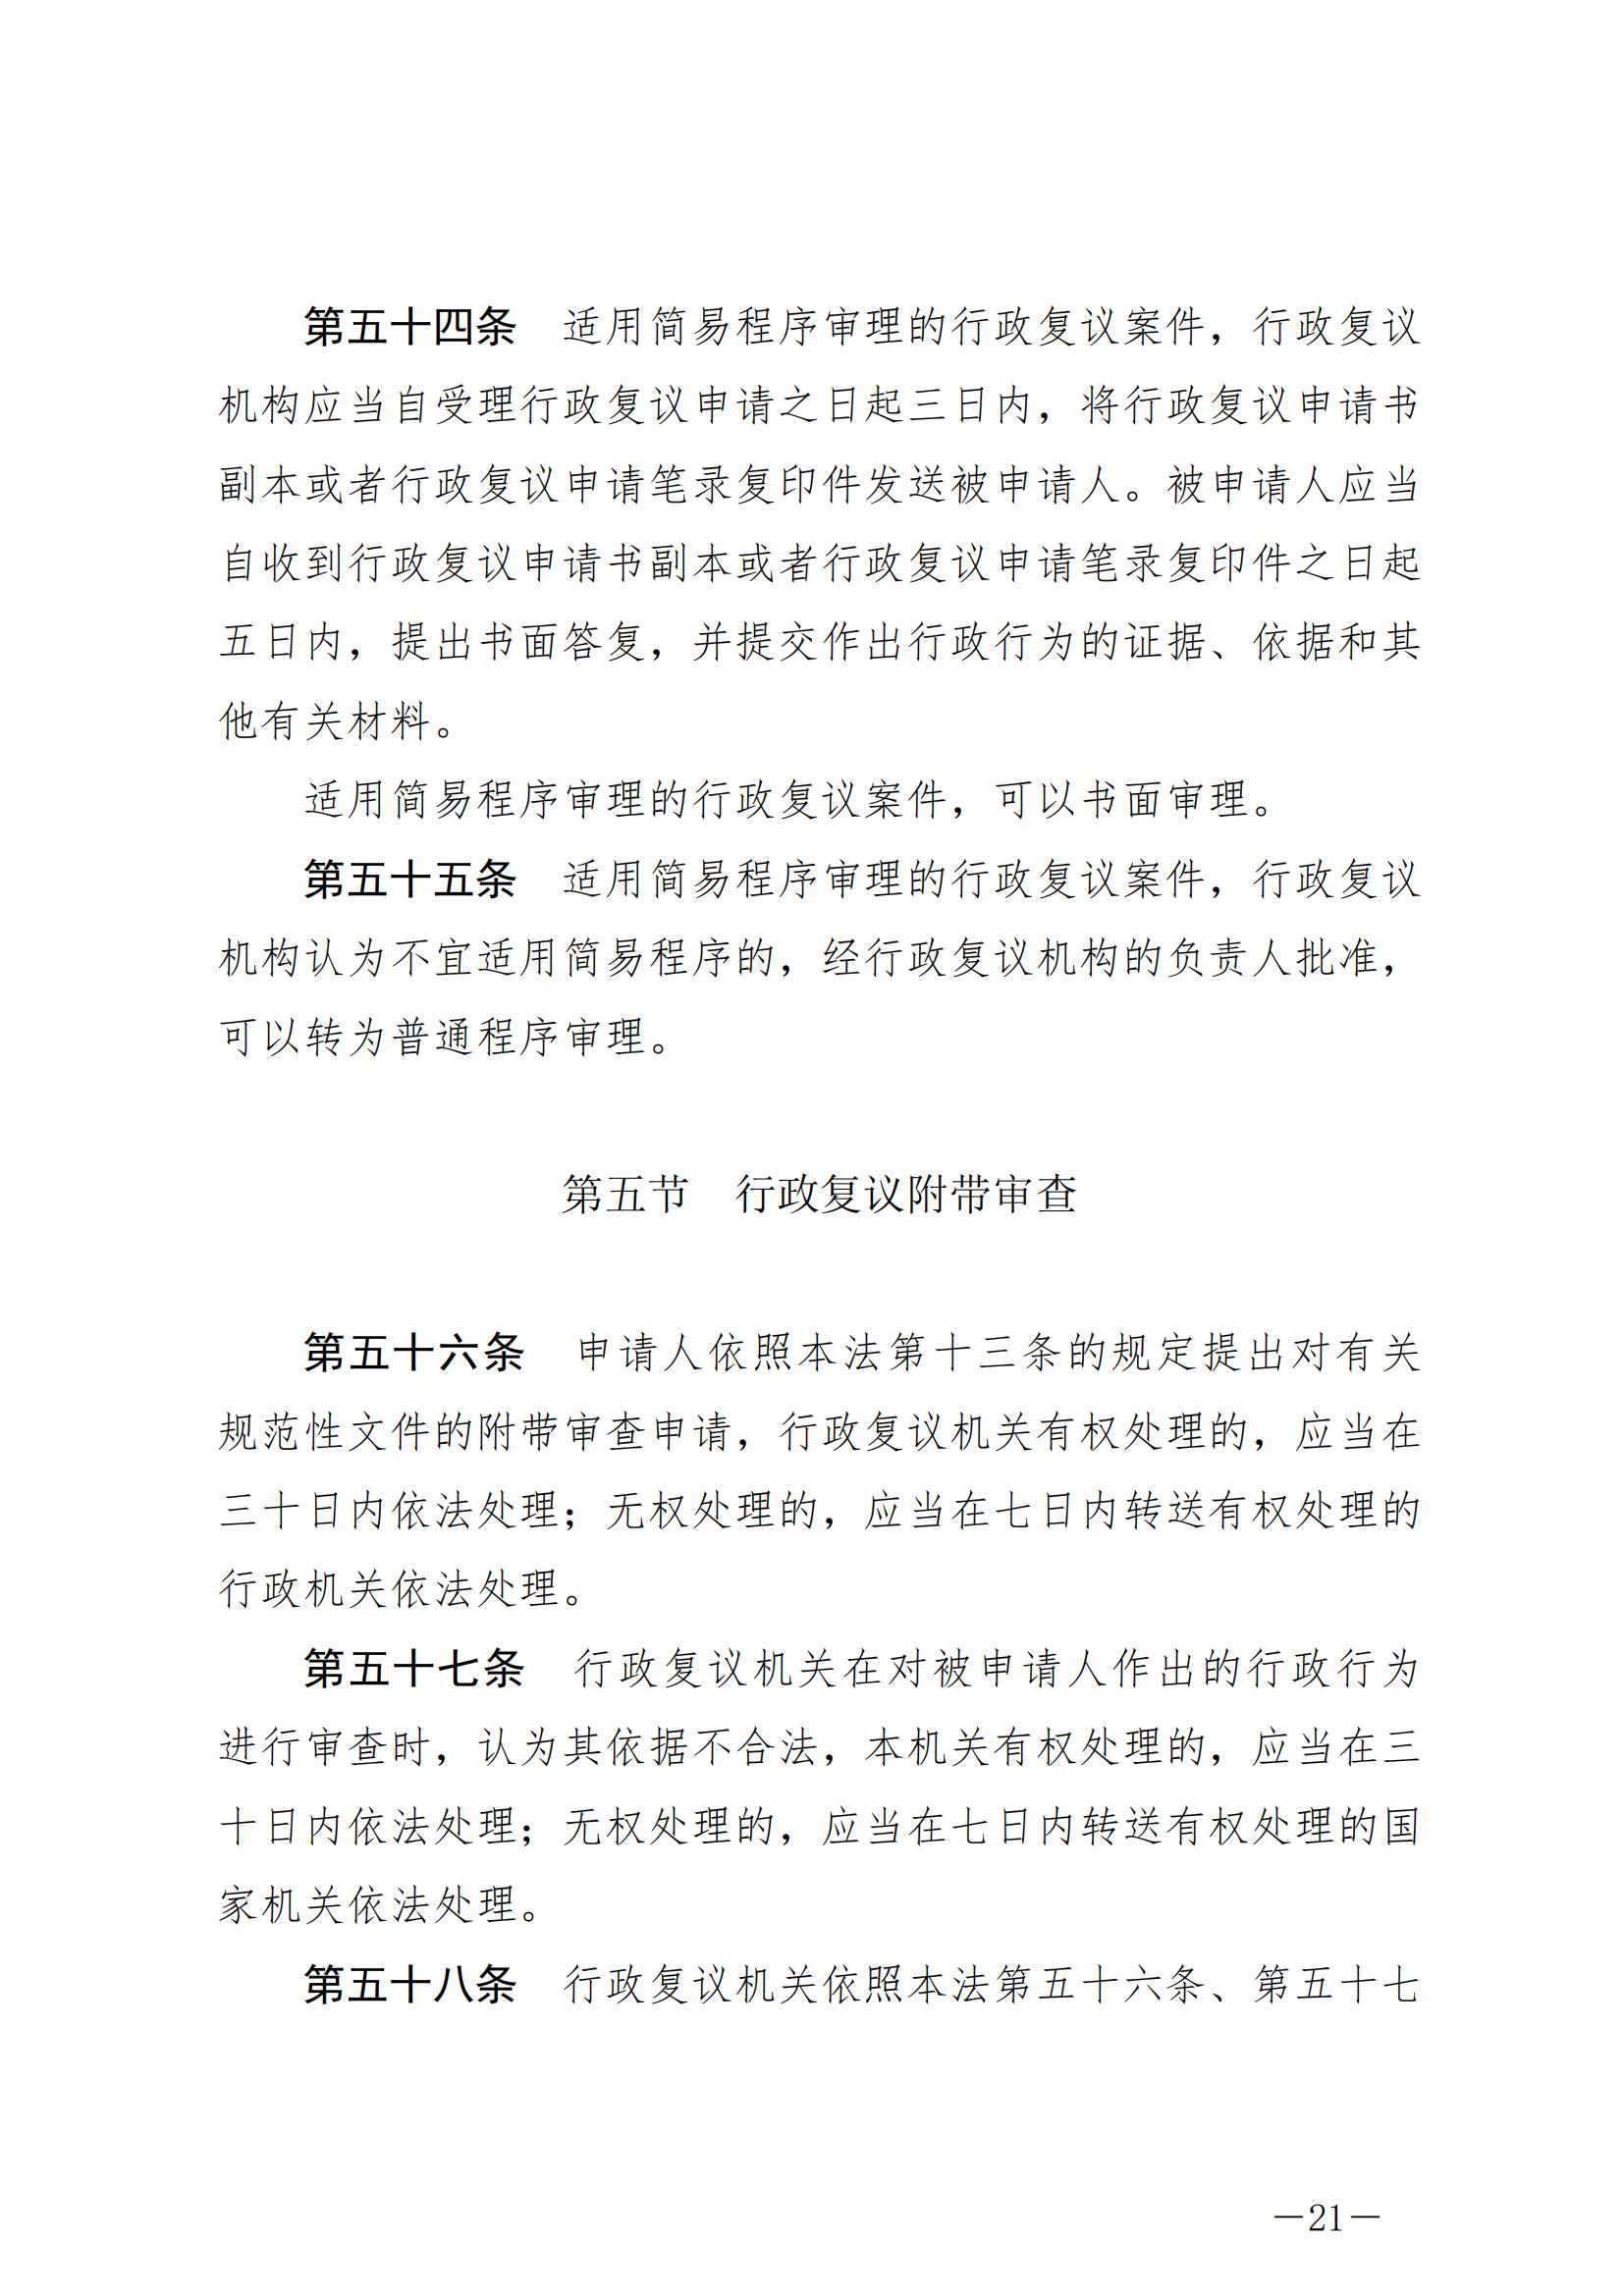 《中华人民共和国行政复议法》_20231204154310_20.jpg